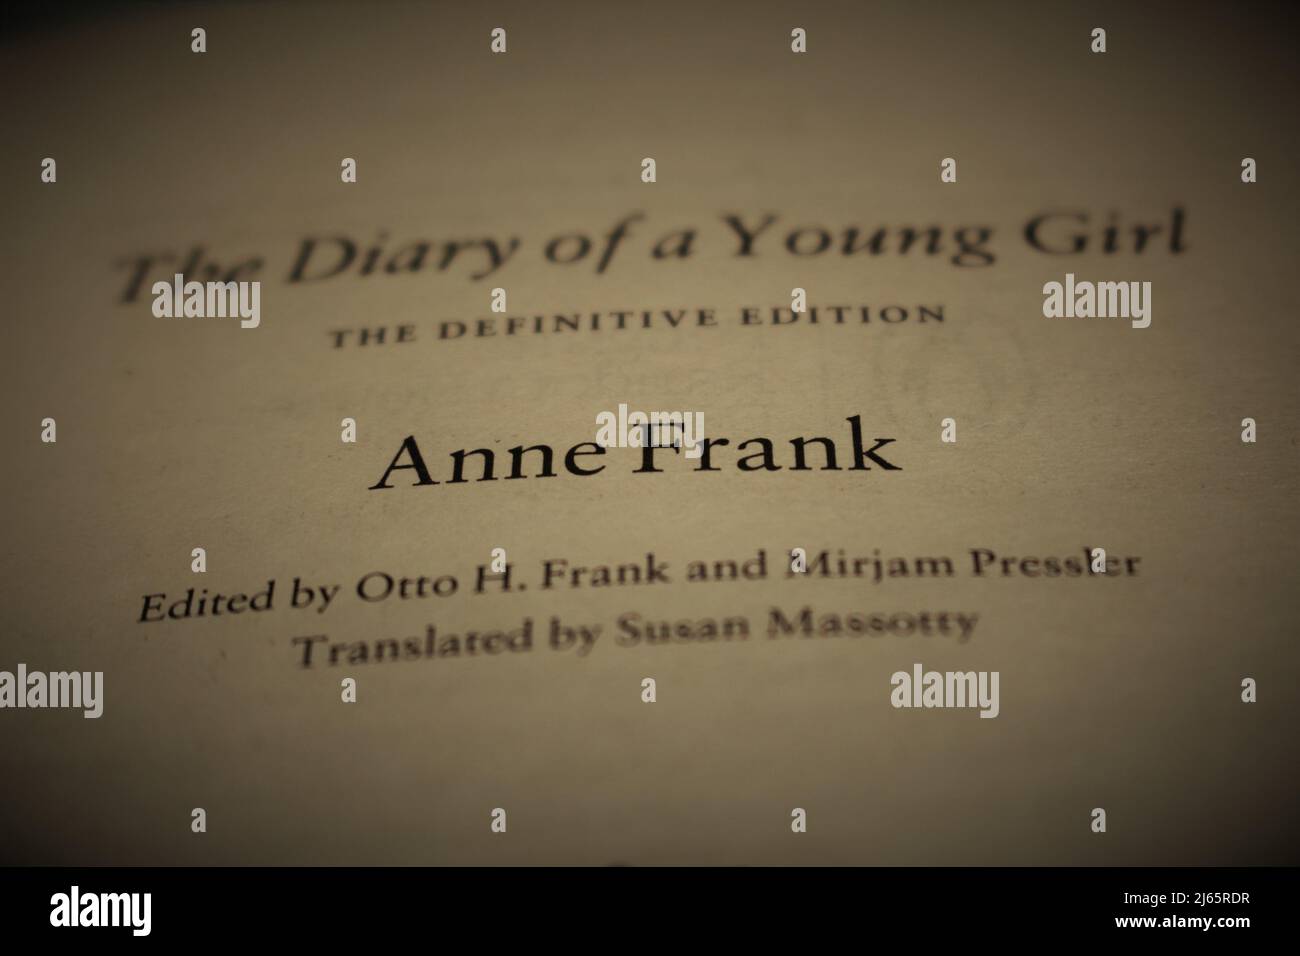 Innencover des Tagebuchs von Anne Frank. Konzept, um über Anne Frank oder ihr Tagebuch zu sprechen. Stockfoto